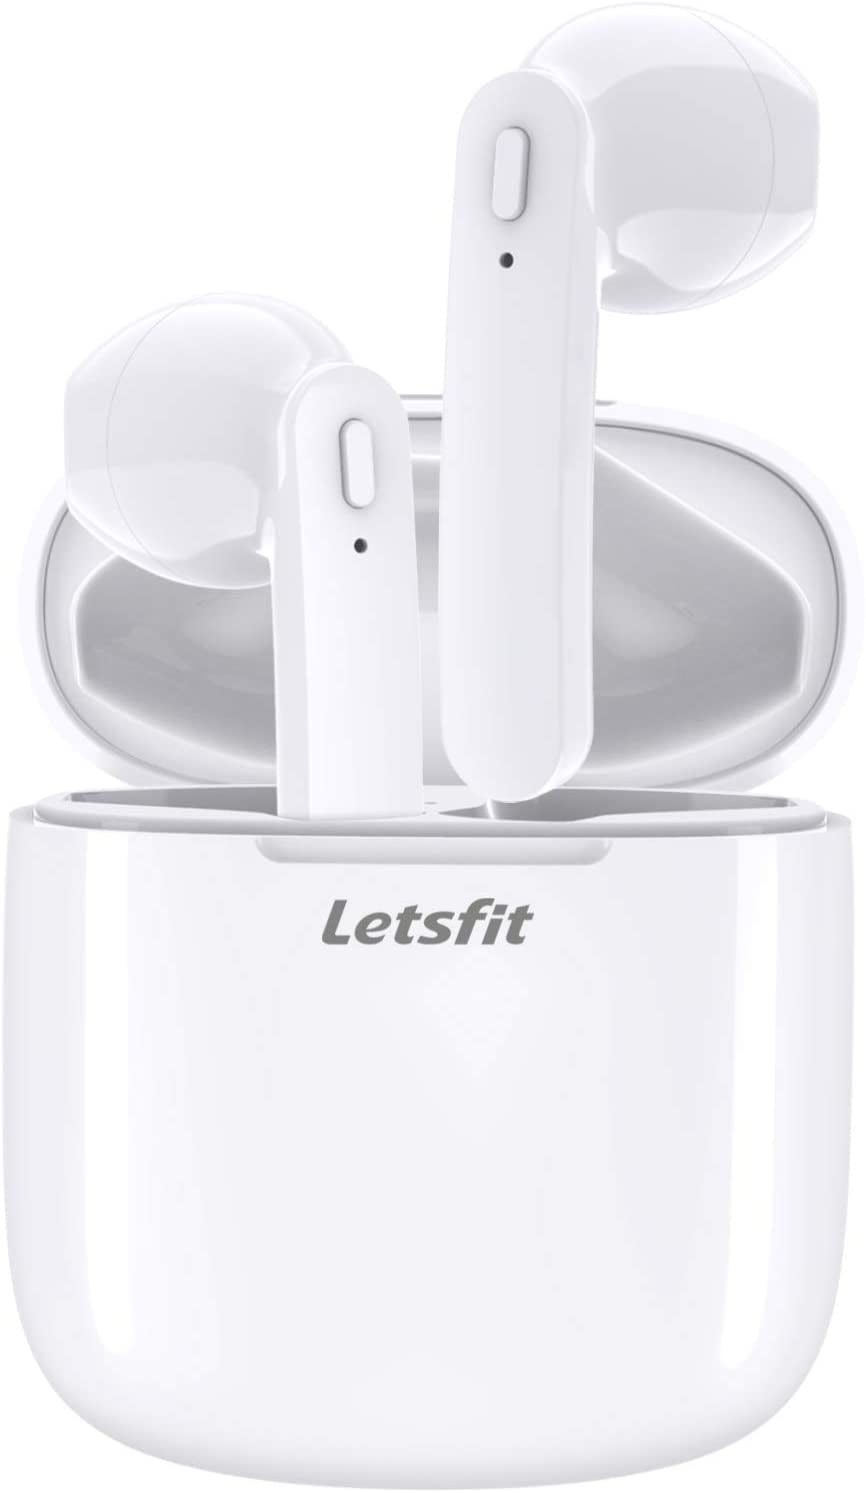 letsfit t12 wireless stereo earphones new 